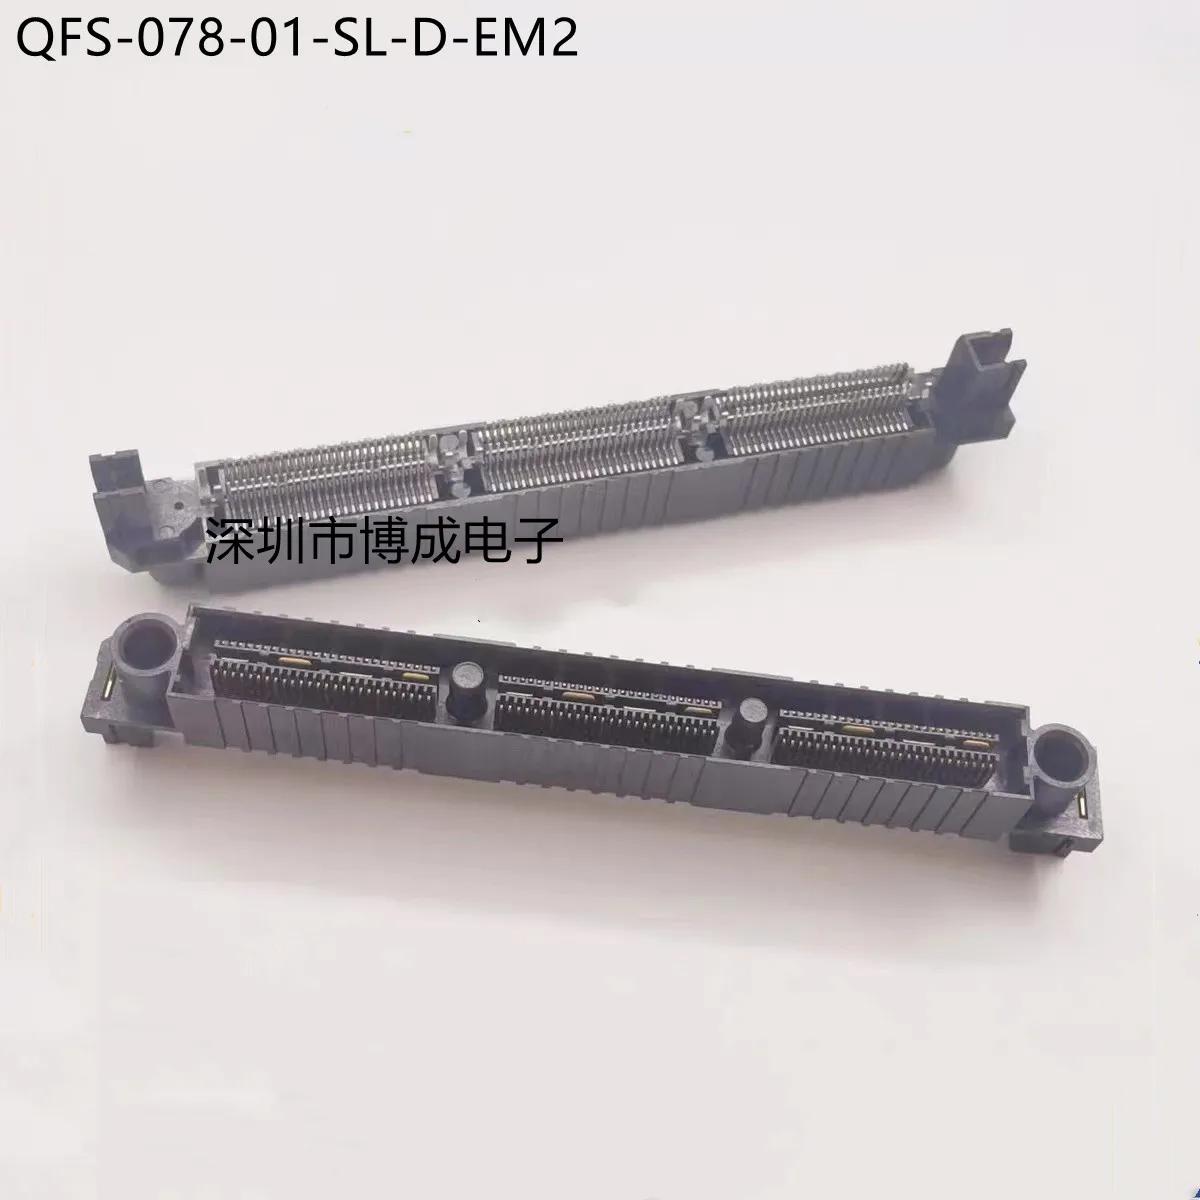 QFS-078-01-SL-D-EM2 156  0.64mm, 2 